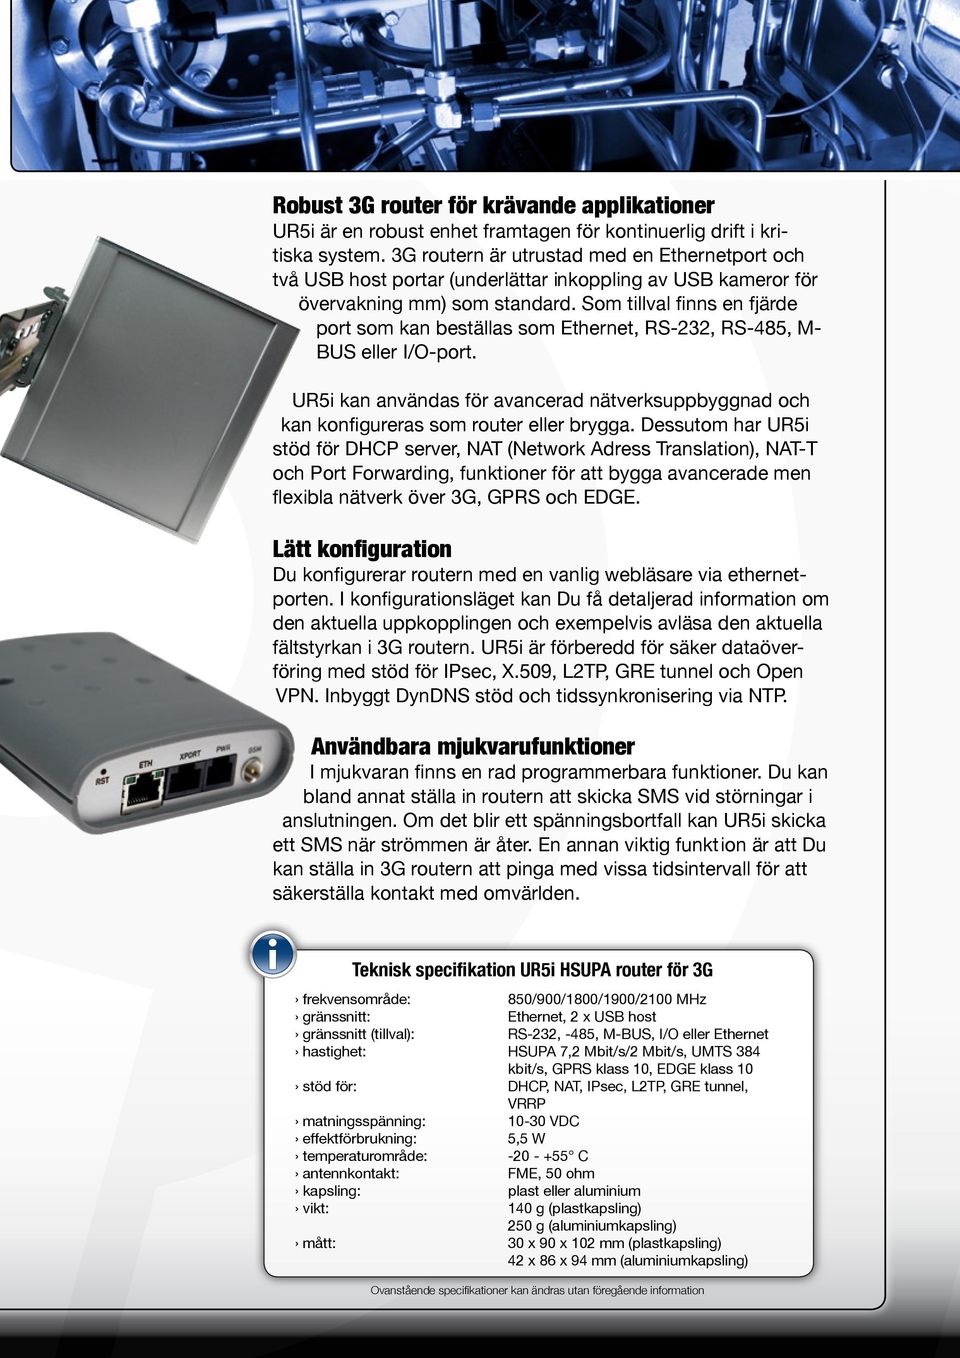 Som tillval finns en fjärde port som kan beställas som Ethernet, RS-232, RS-485, M- BUS eller I/O-port. UR5i kan användas för avancerad nätverksuppbyggnad och kan konfigureras som router eller brygga.